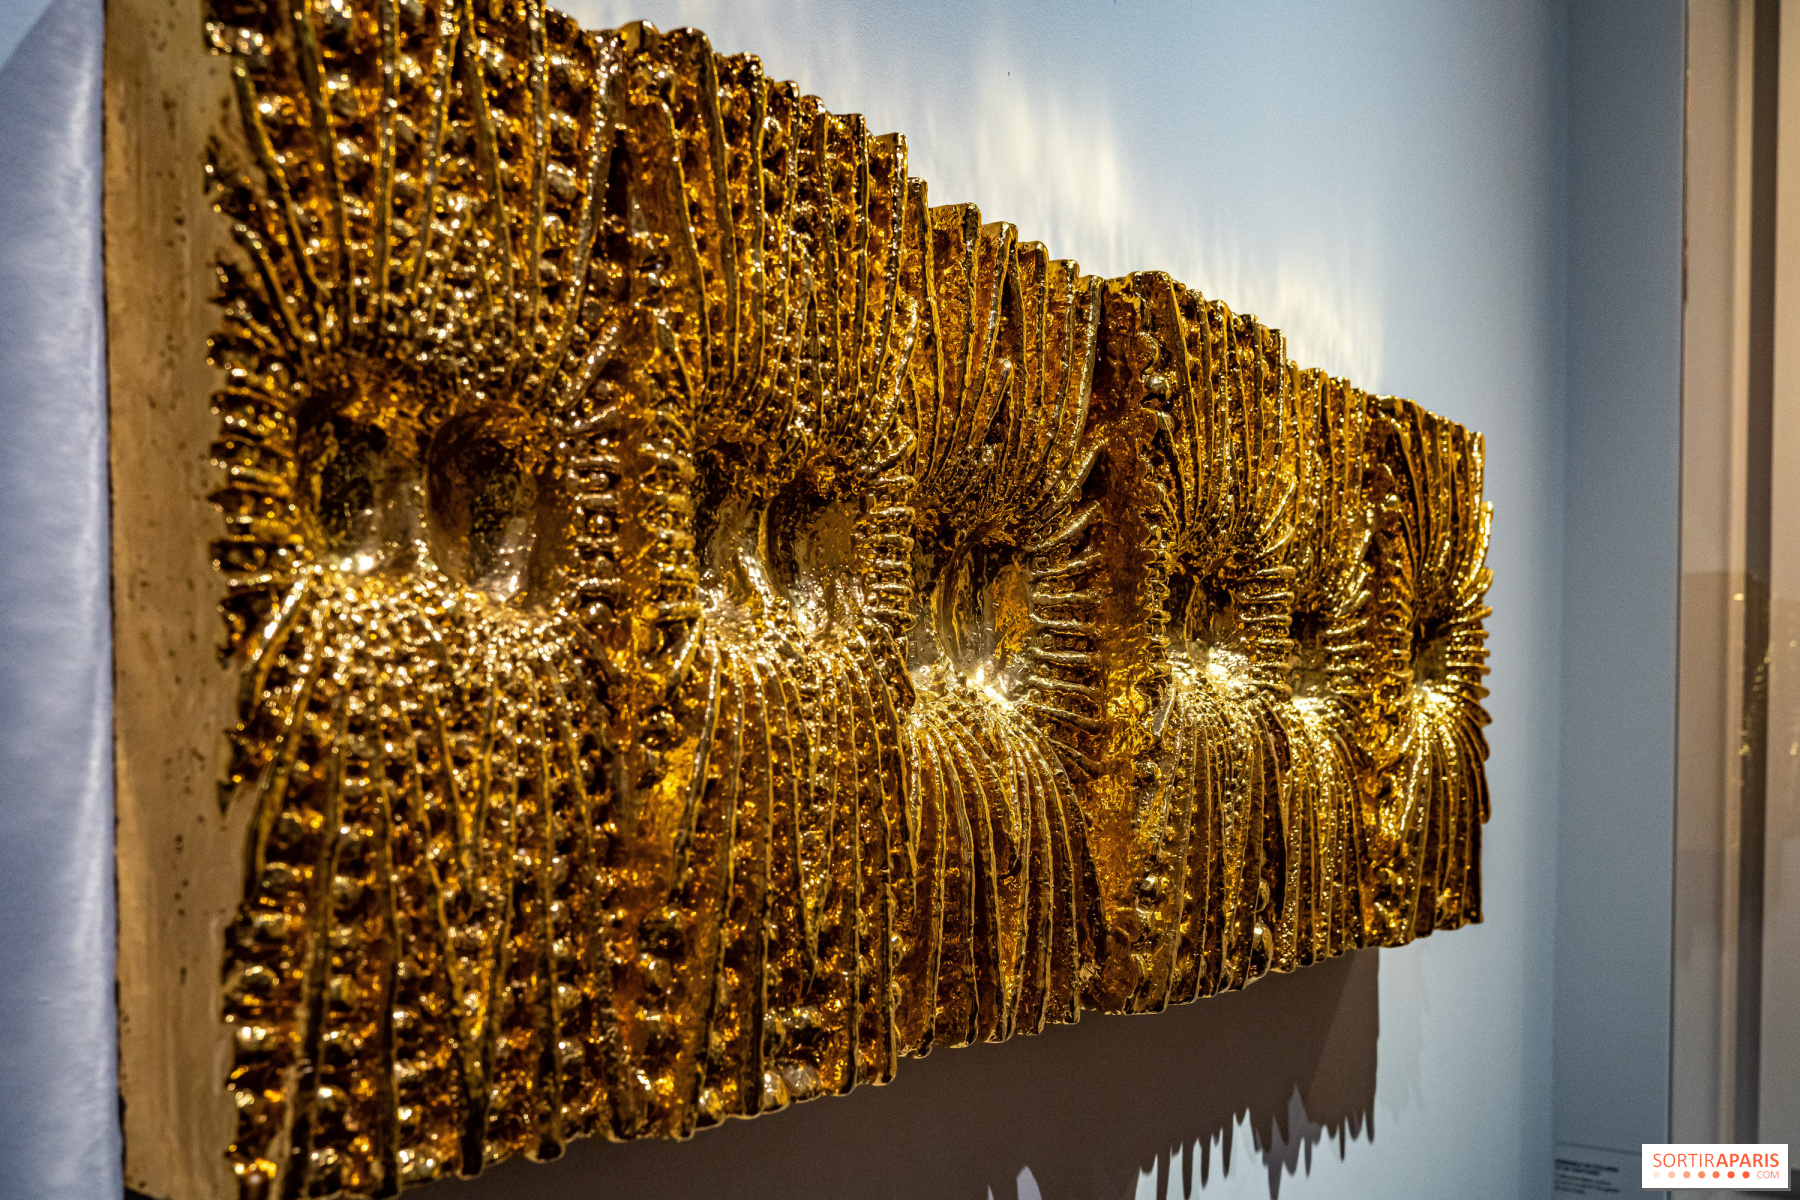 Gold by Yves Saint Laurent”, Paris Musée Yves Saint Laurent's